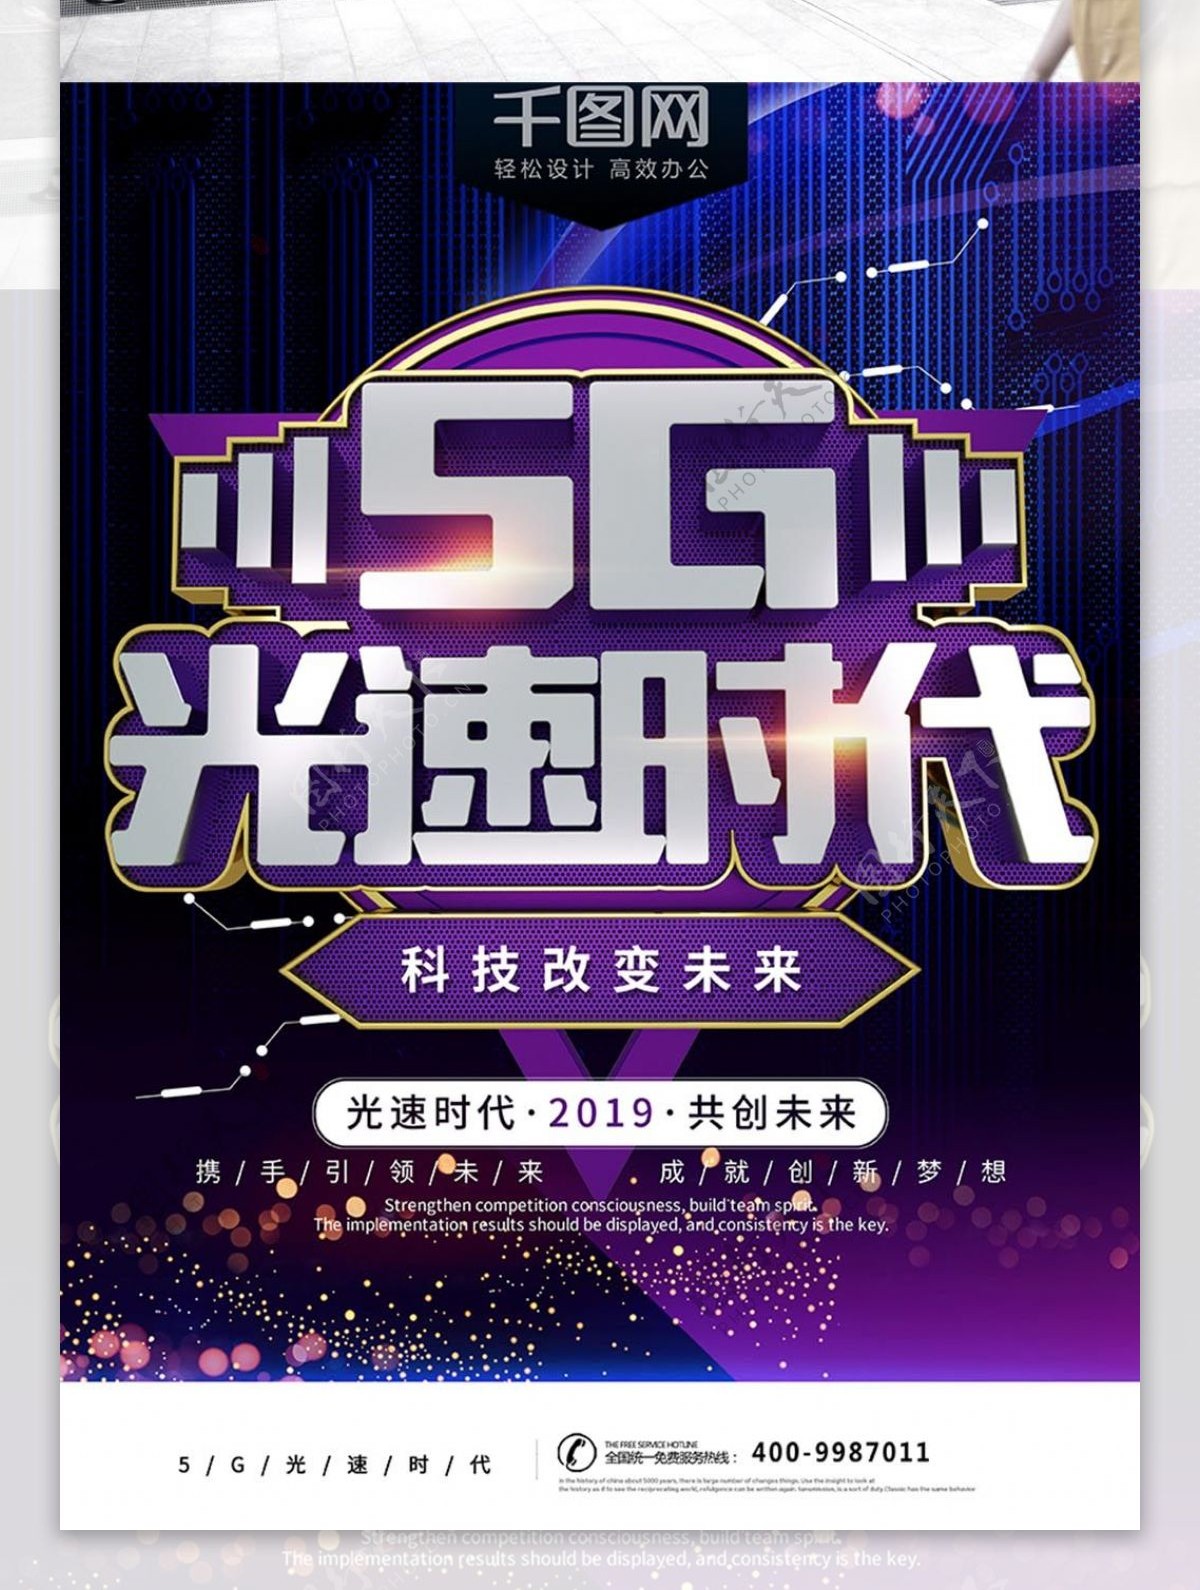 5G新时代紫色酷炫科技宣传海报